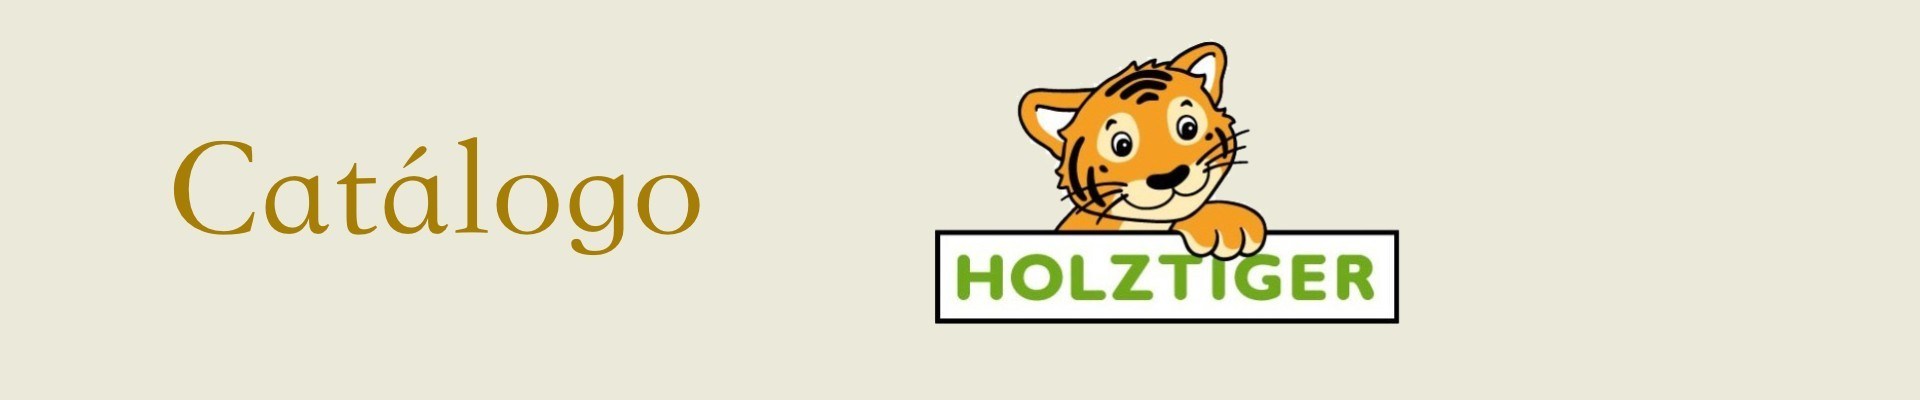 Comprar juguetes educativos para niños de la marca Holztiger | Veobio